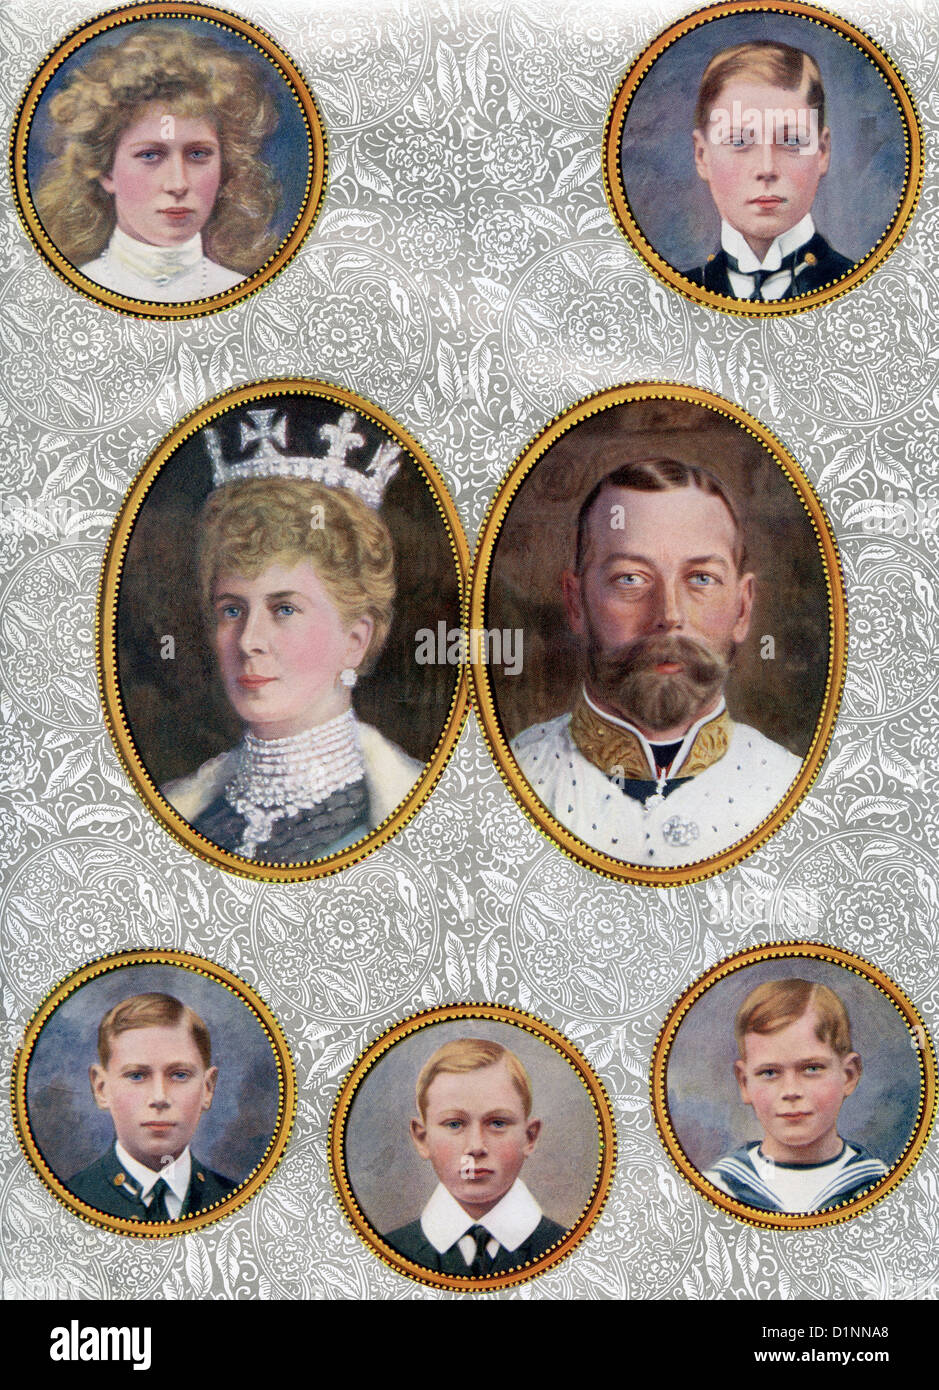 La famille royale britannique en 1910. Banque D'Images